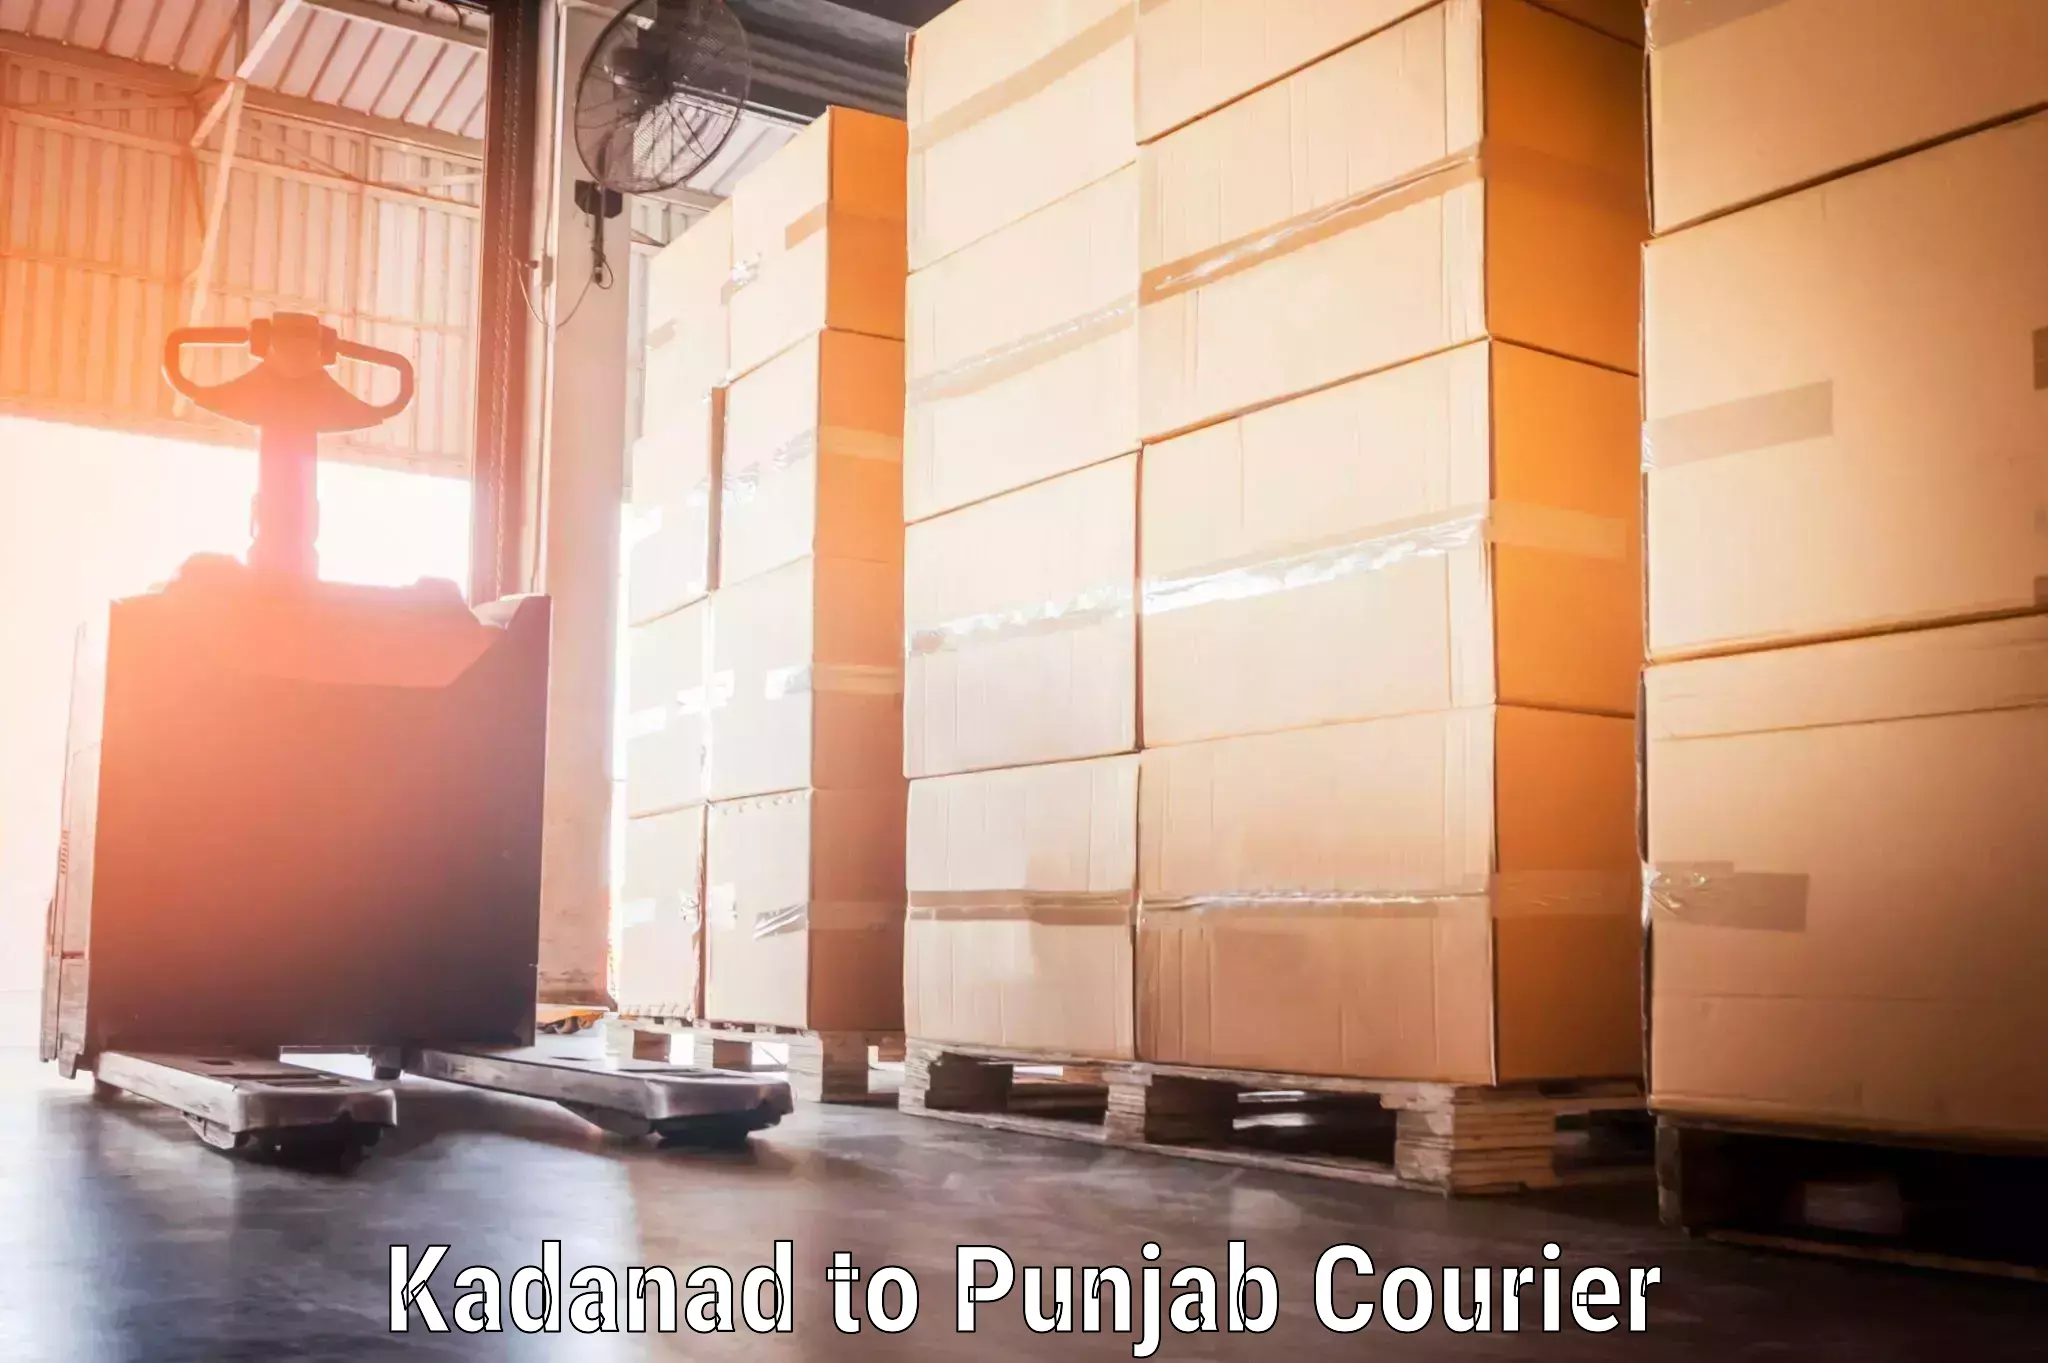 Baggage shipping schedule Kadanad to Punjab